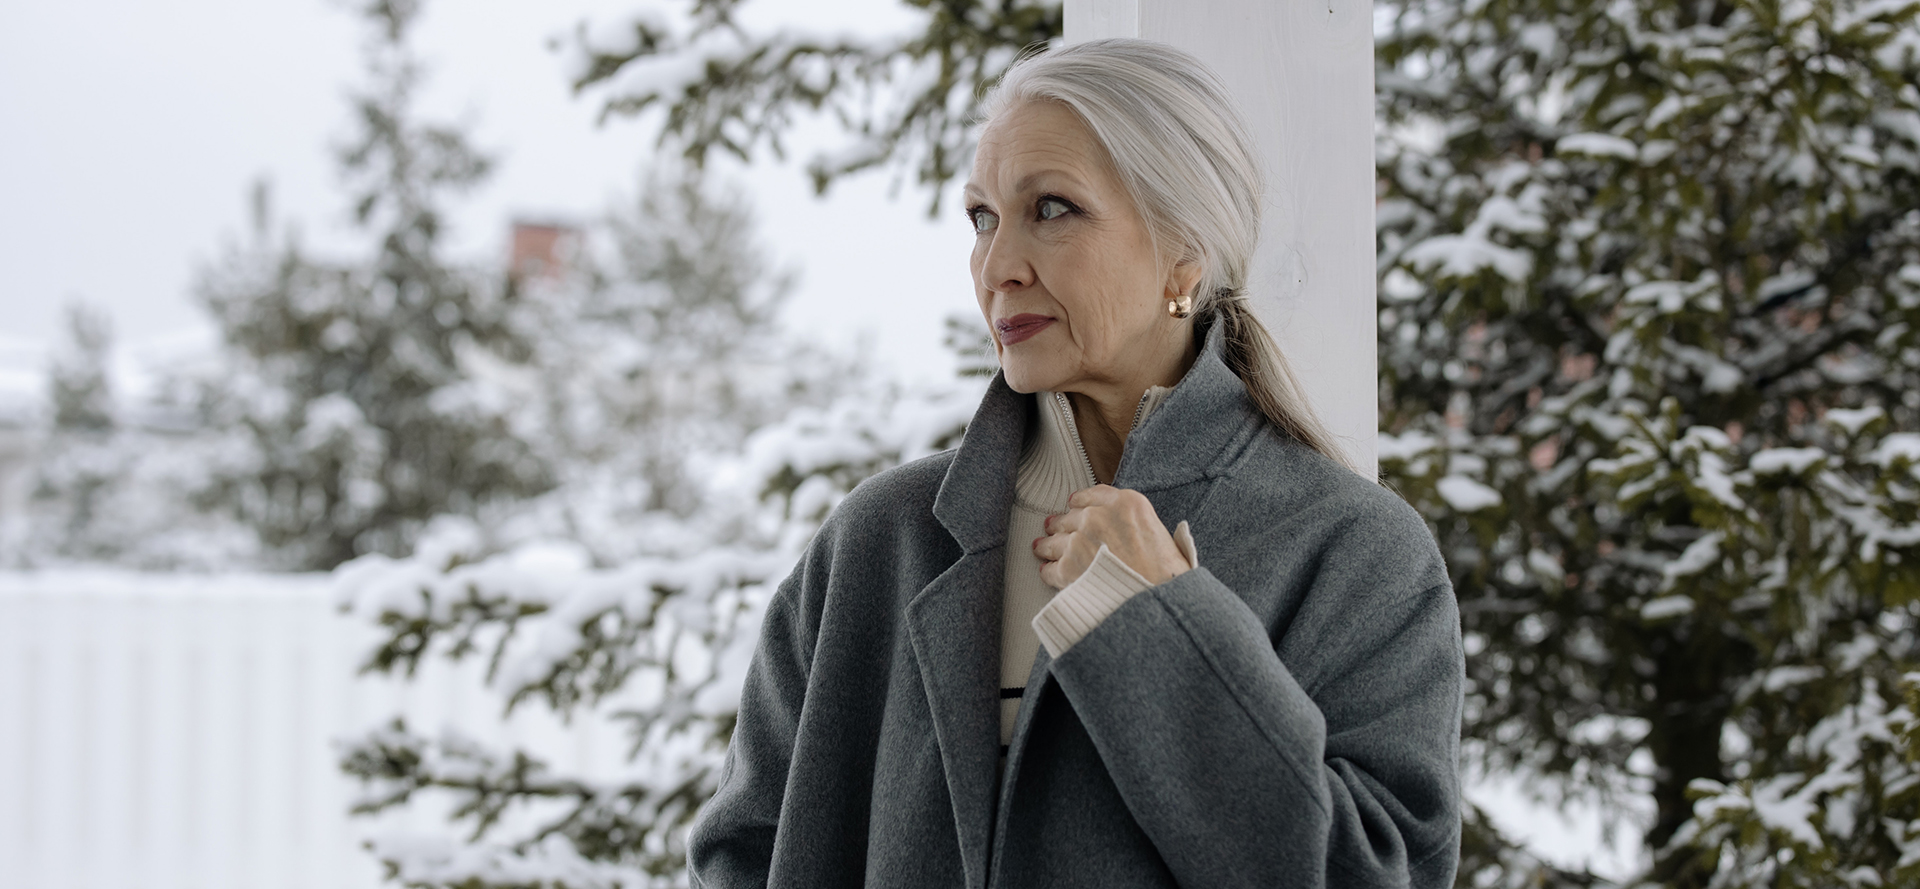 La nonna in cappotto grigio davanti al paesaggio invernale.